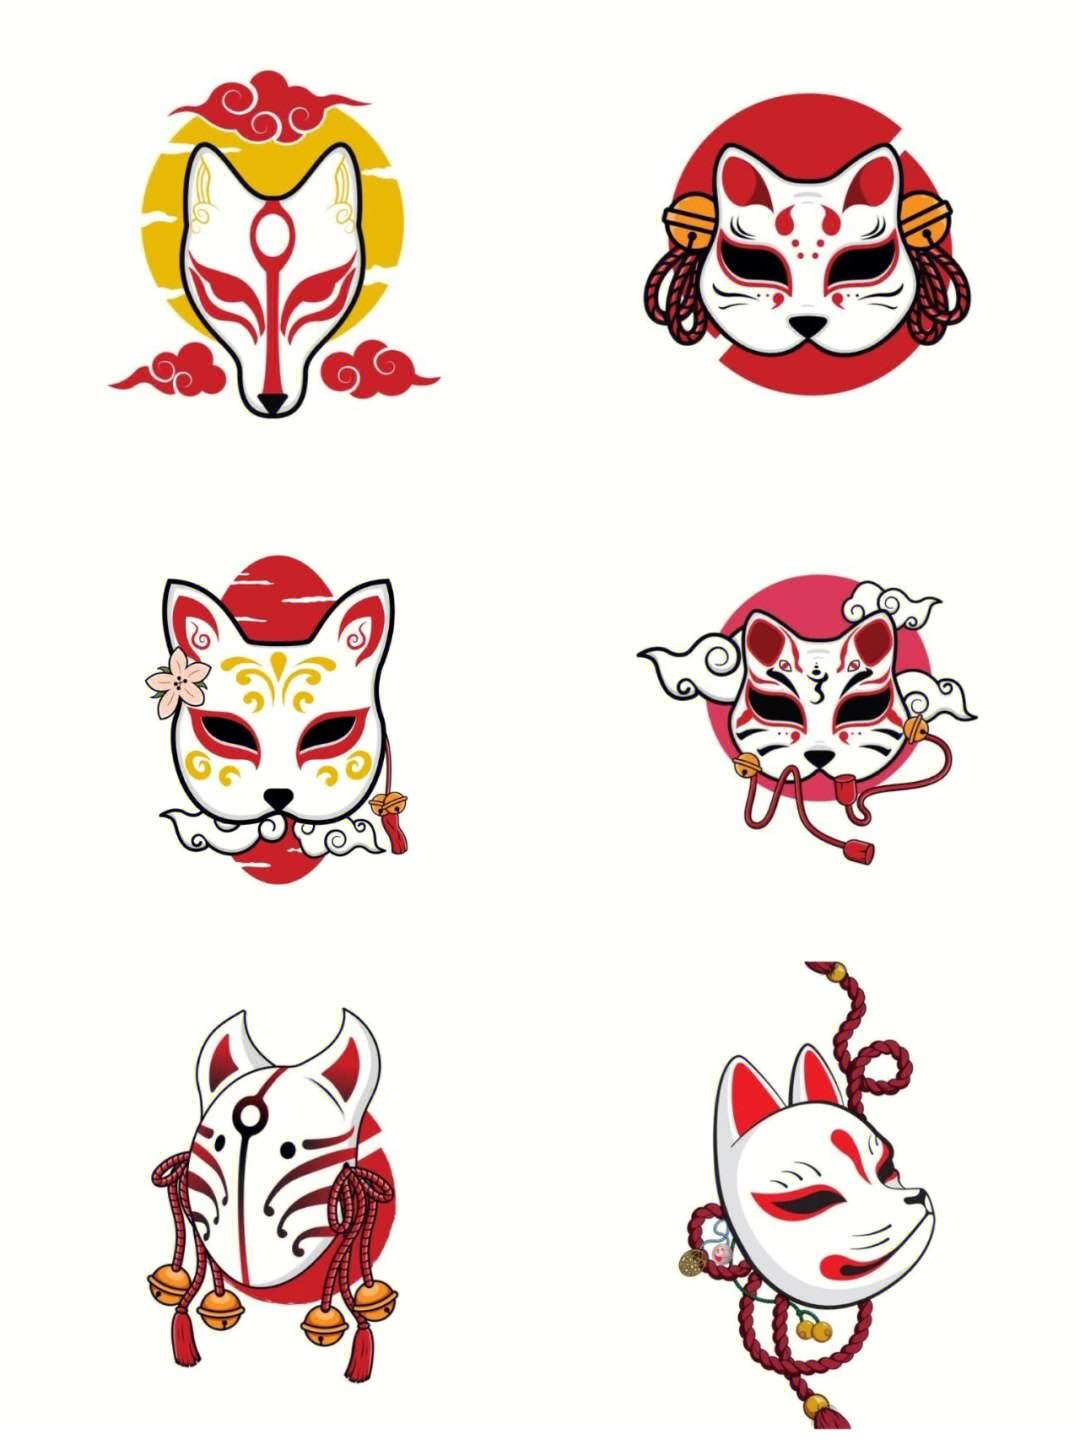 御守日式狐狸面具,彩色手稿图,非常酷